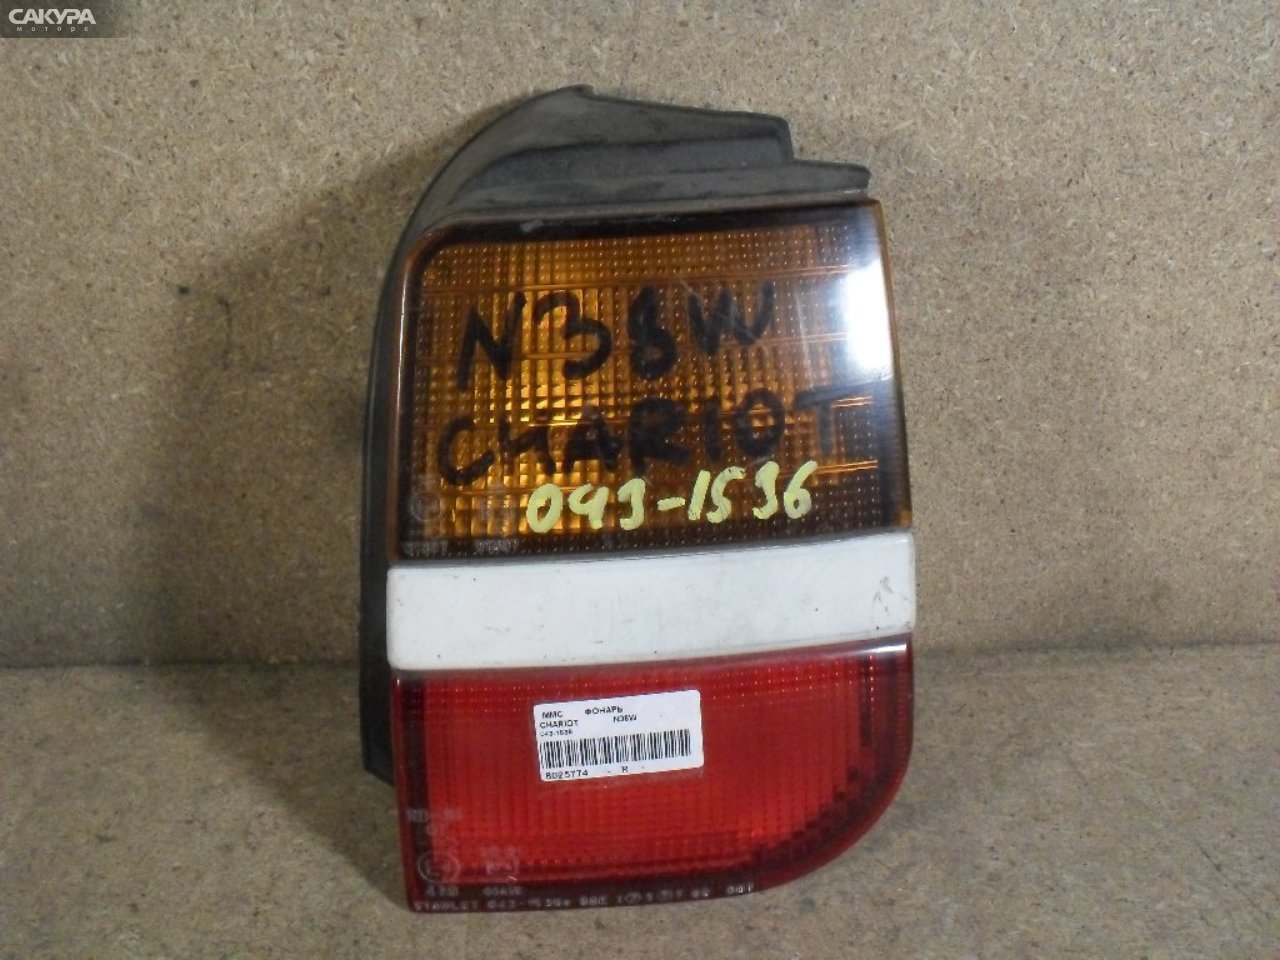 Фонарь стоп-сигнала правый Mitsubishi Chariot N38W 043-1536: купить в Сакура Абакан.